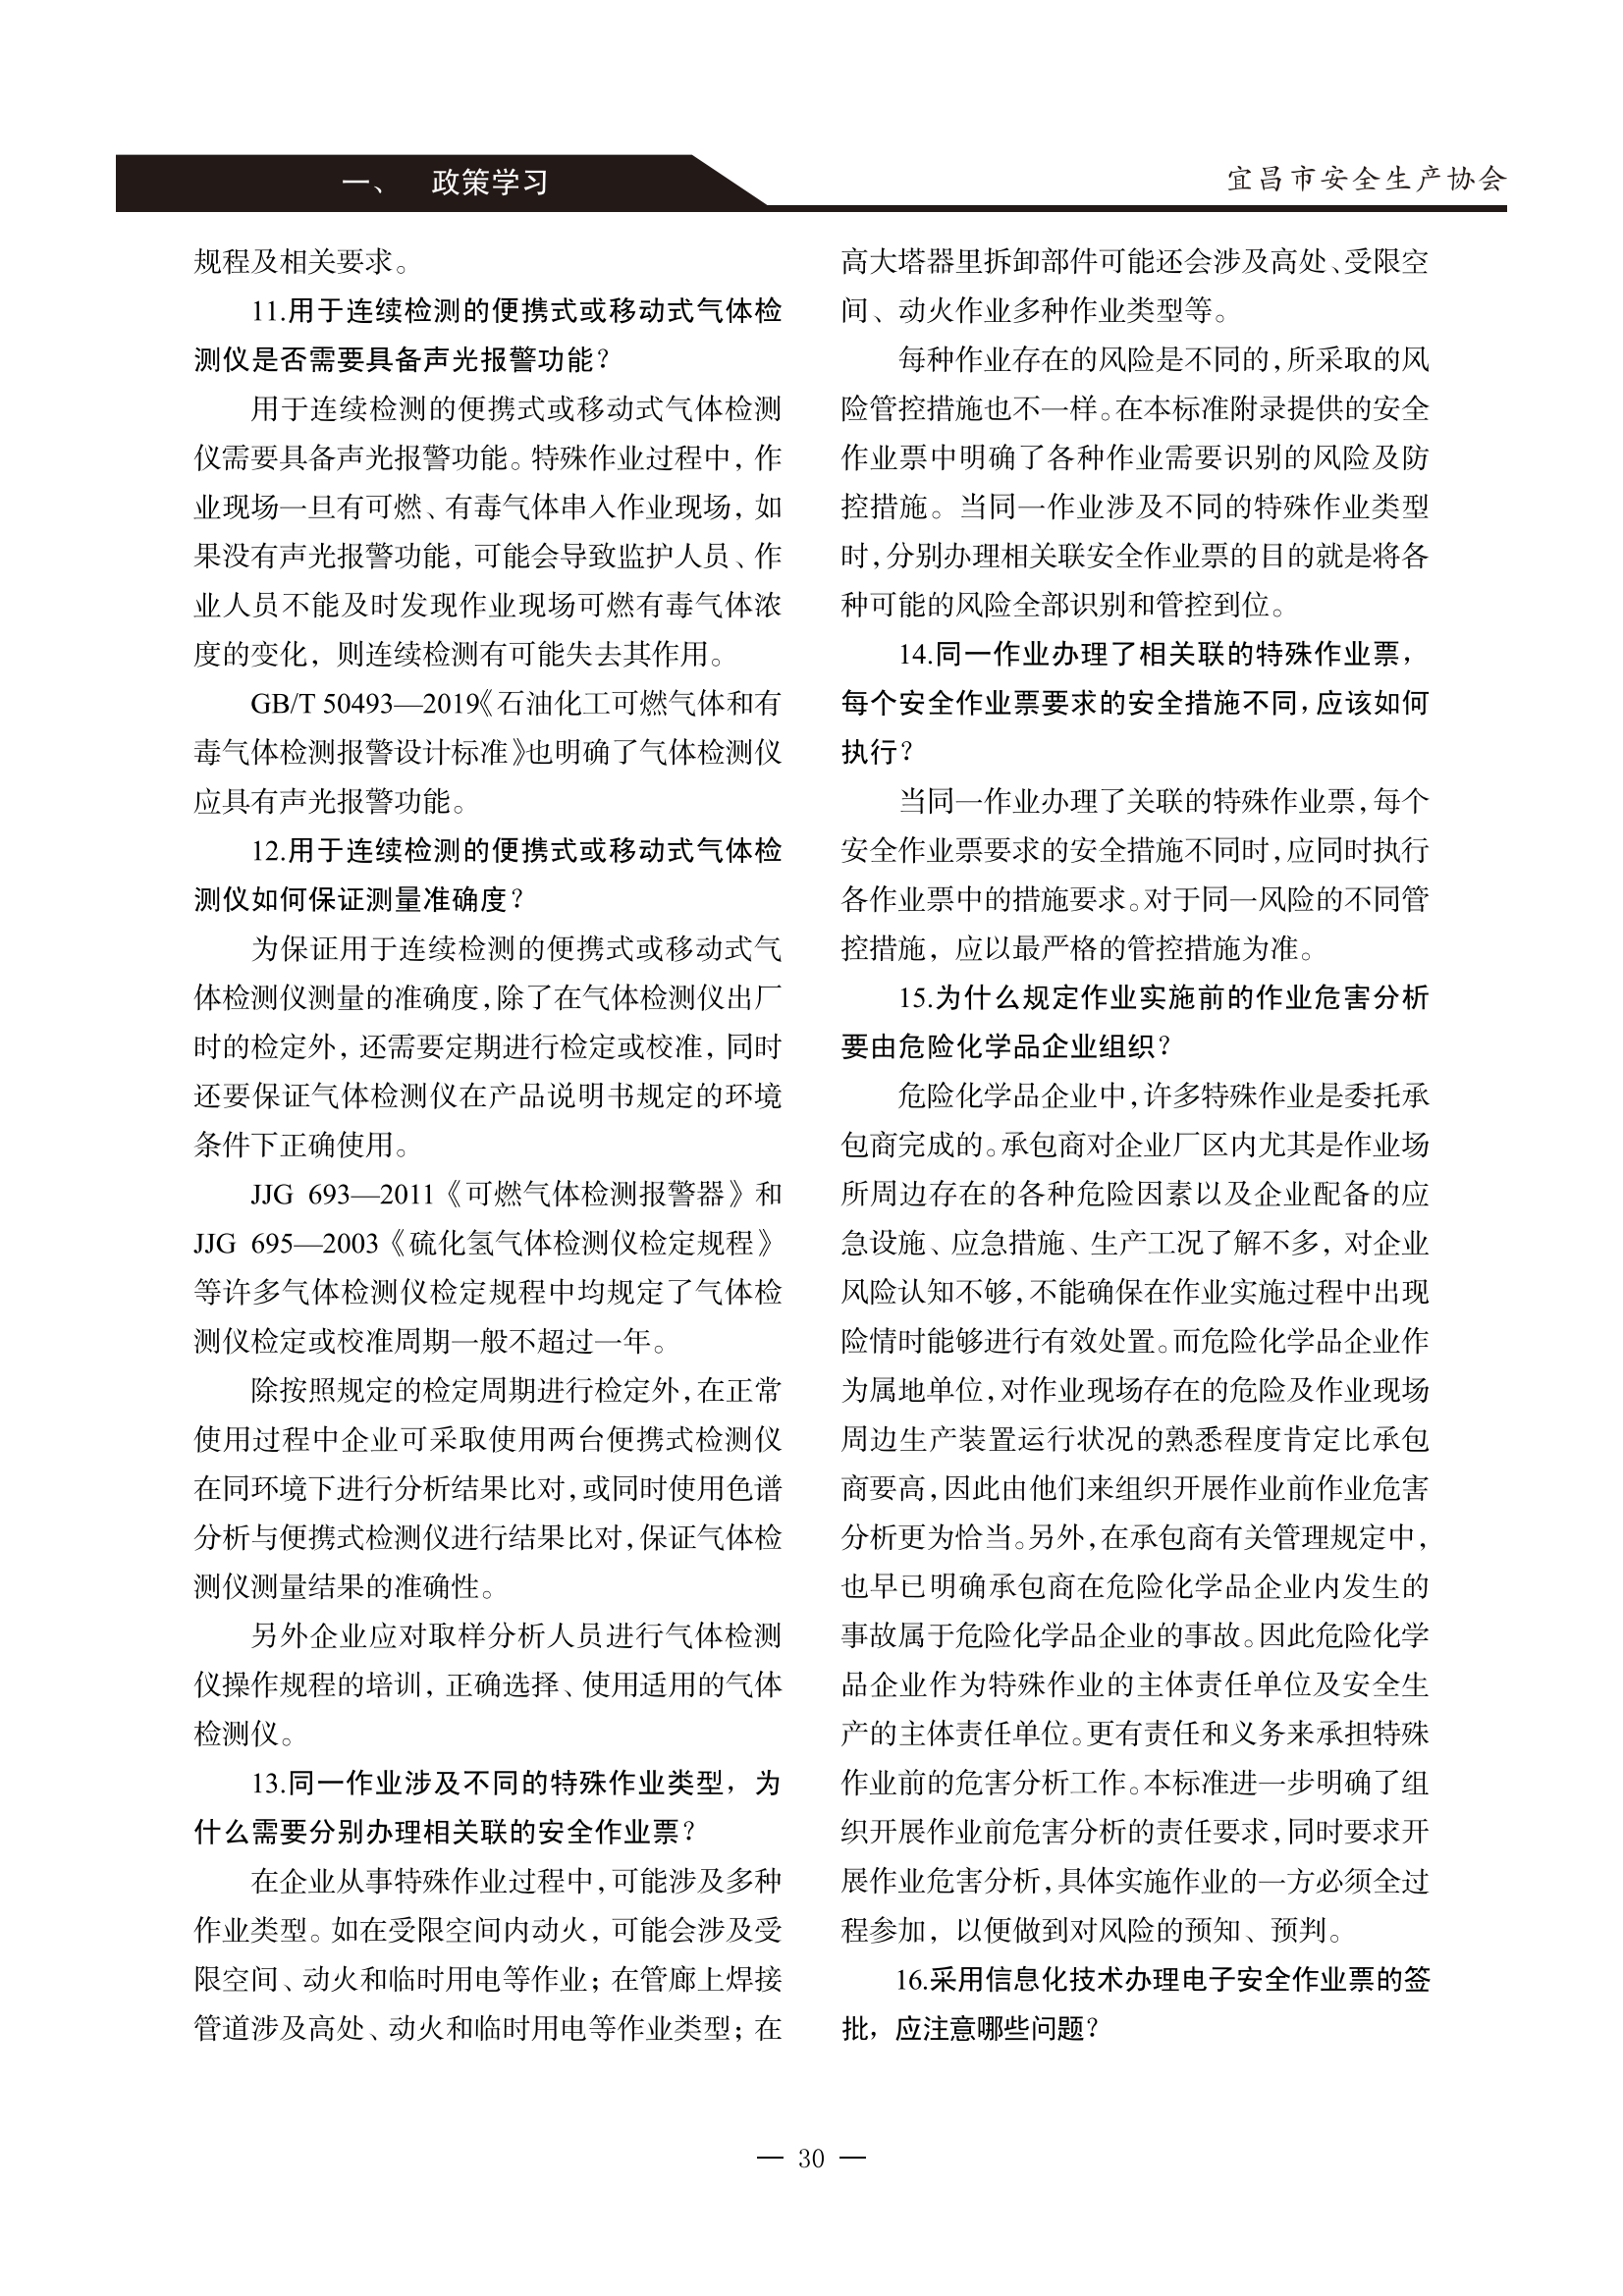 宜昌安全生产期刊第一期_35.png